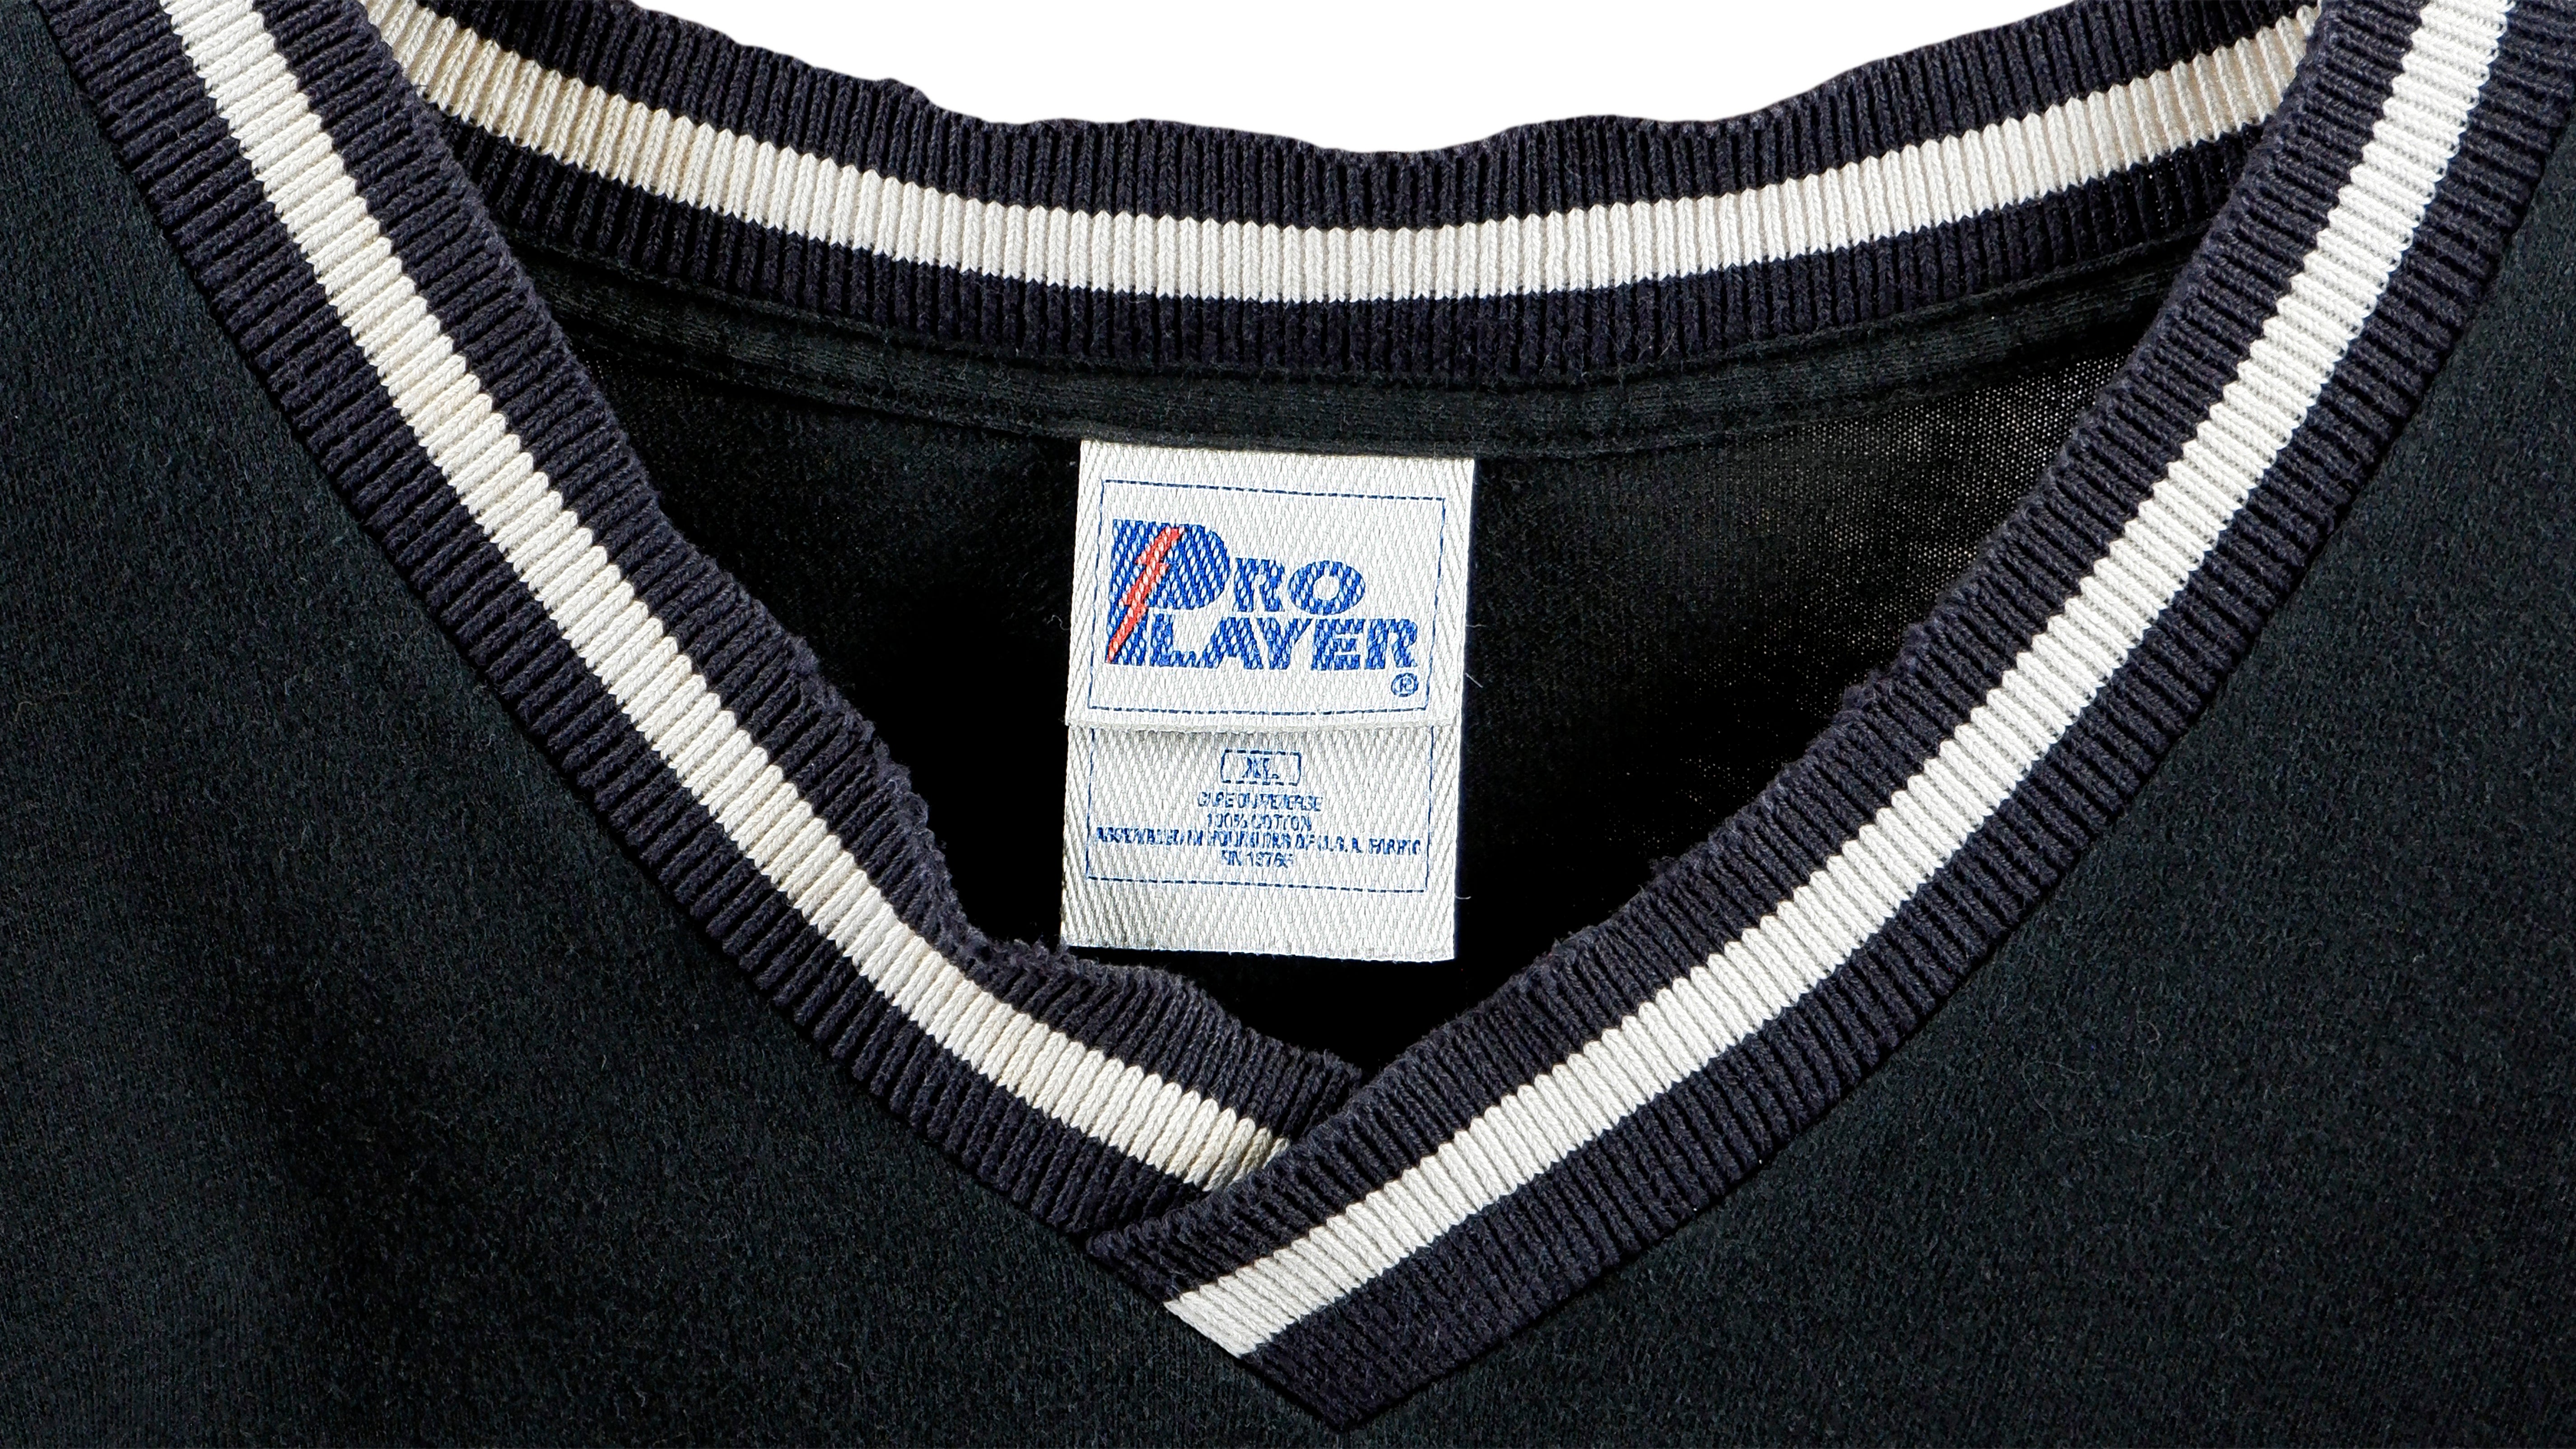 Vintage NBA 1994 Toronto Raptors Embroidered Crewneck Sweatshirt - Wom